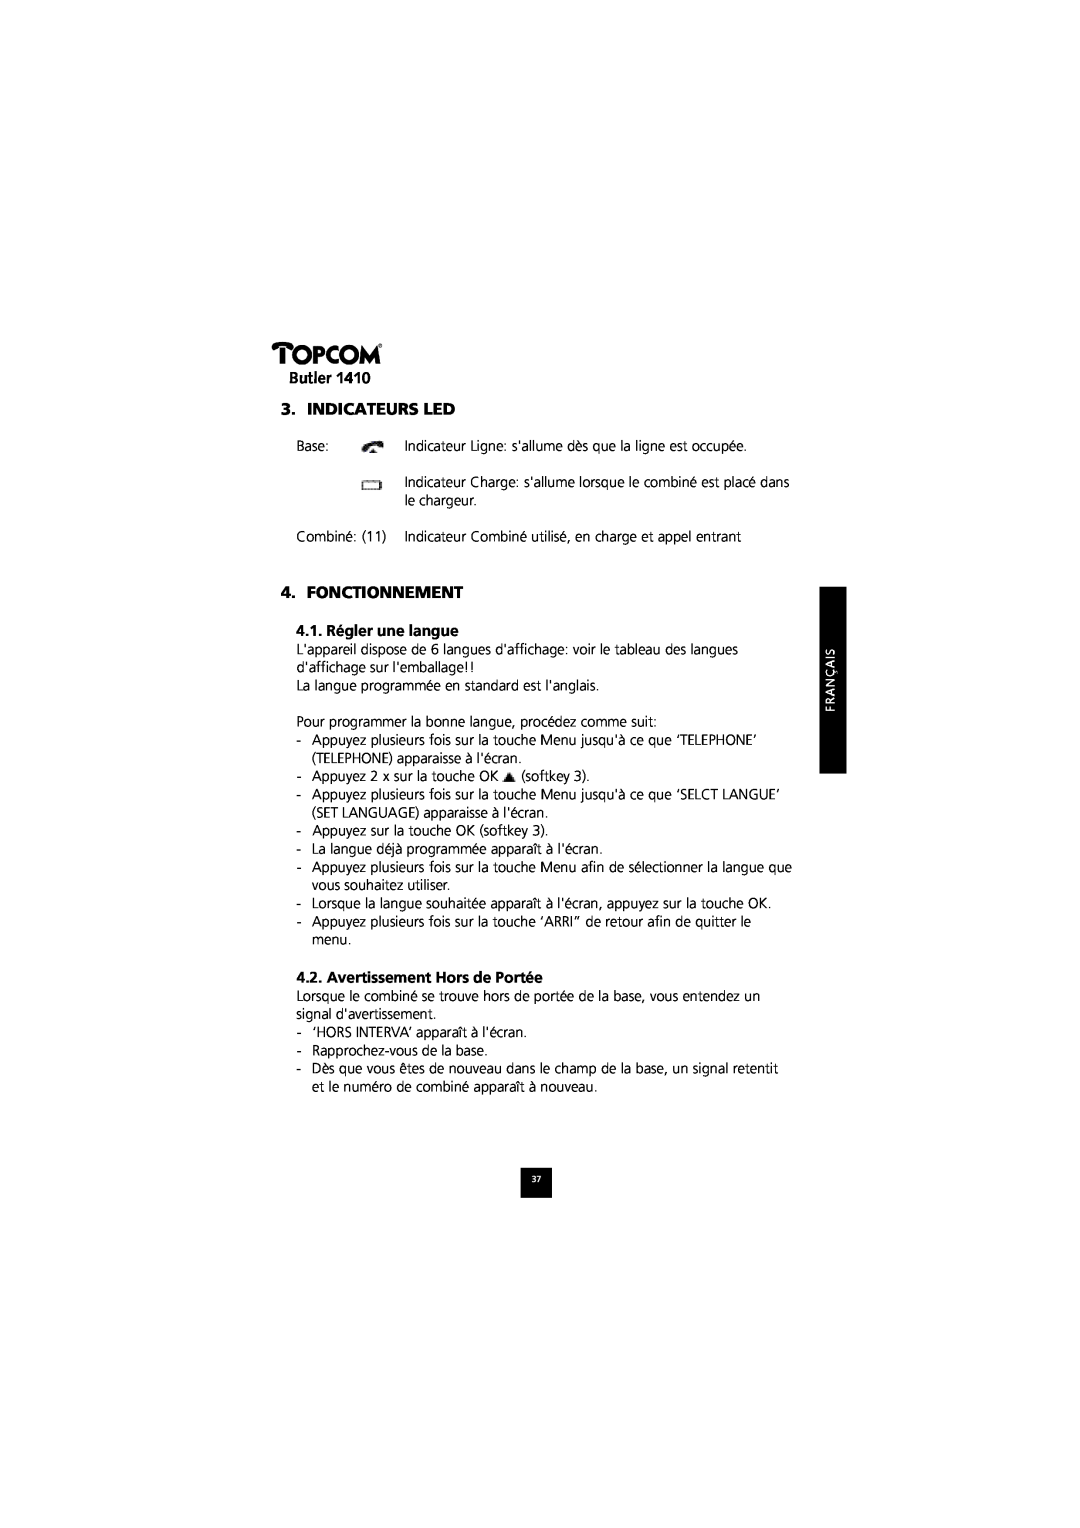 Topcom 1410 manual Butler 3. INDICATEURS LED, Fonctionnement, 4.1. Régler une langue, Avertissement Hors de Portée 